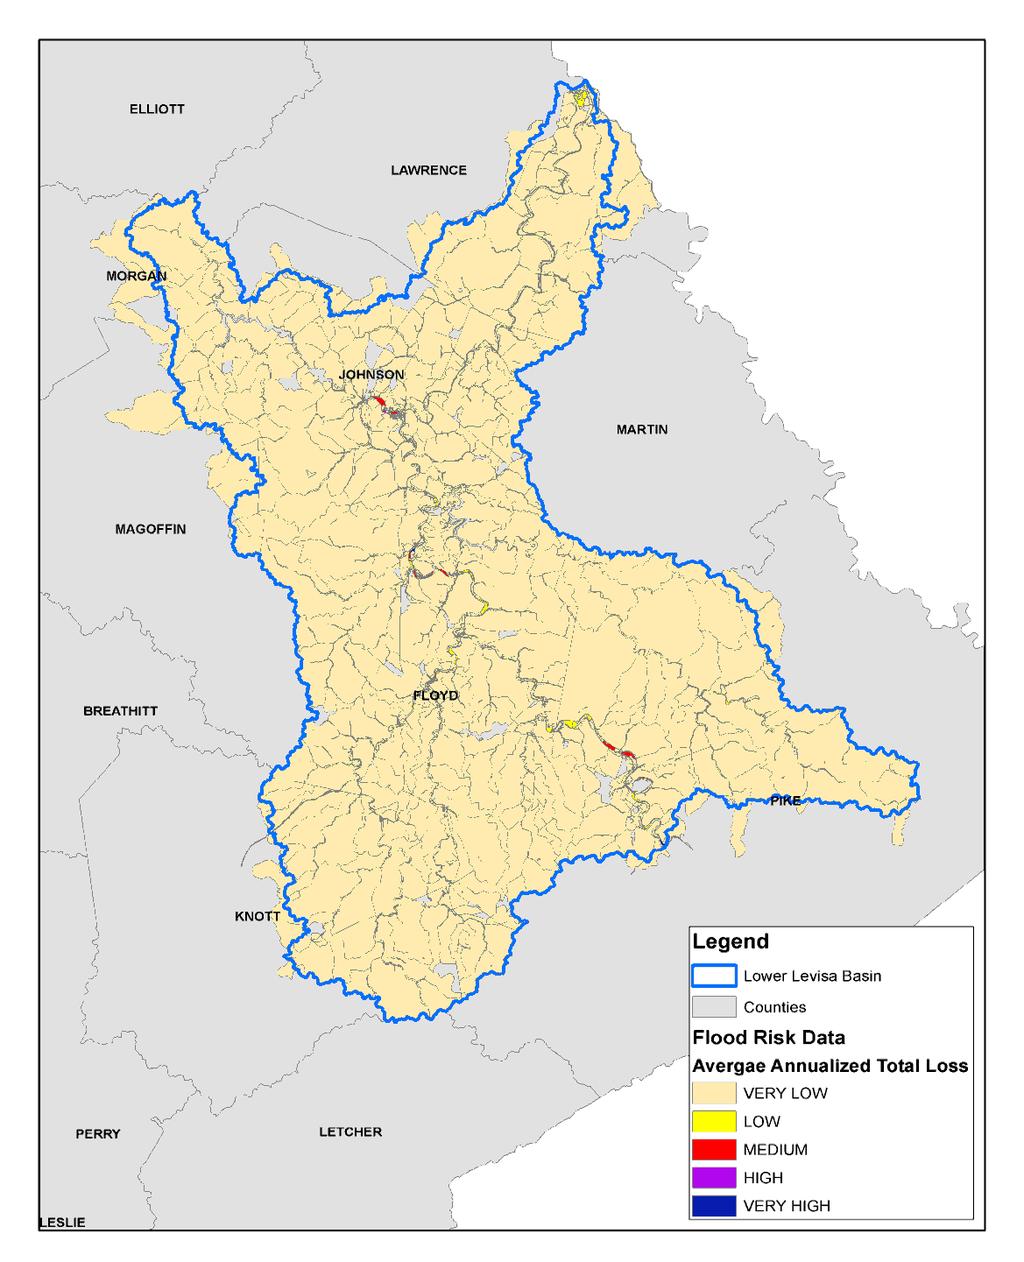 Flood Risk Assessment Datasets Flood Risk Assessment Data 2010 HAZUS Average